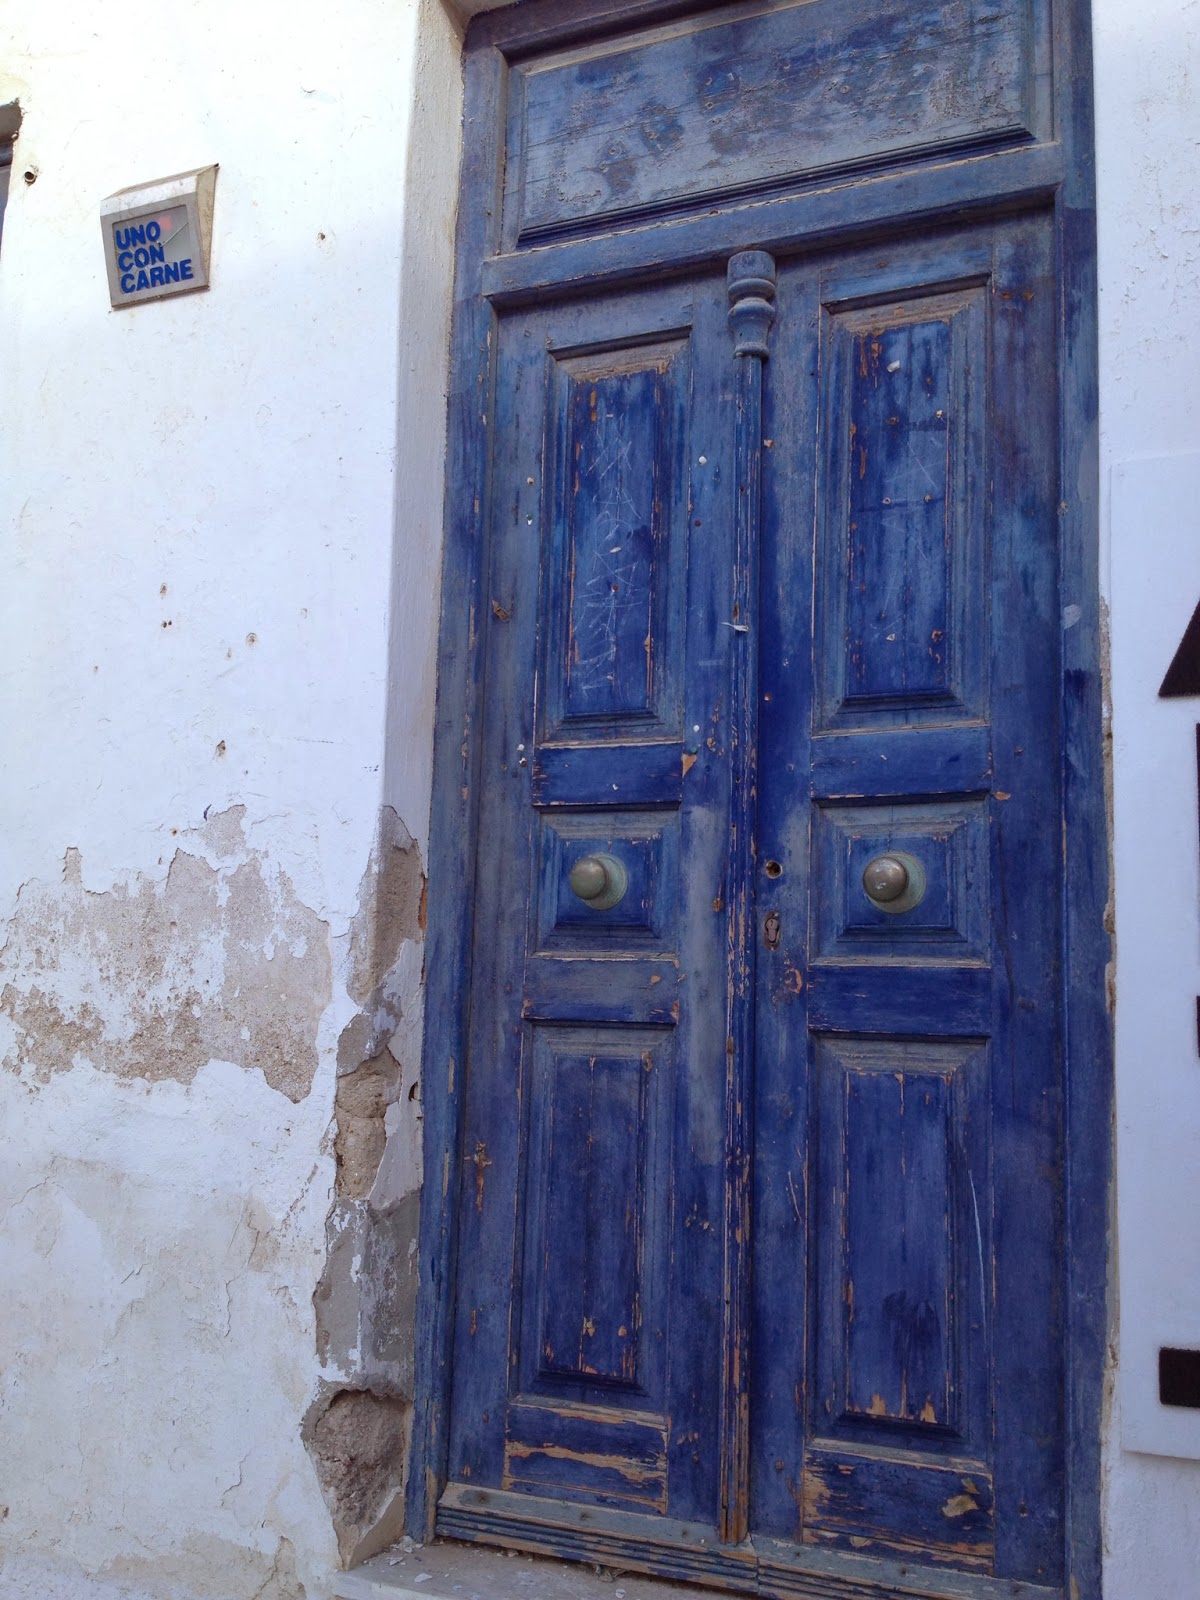 Mykonos - I love pictures of old doors